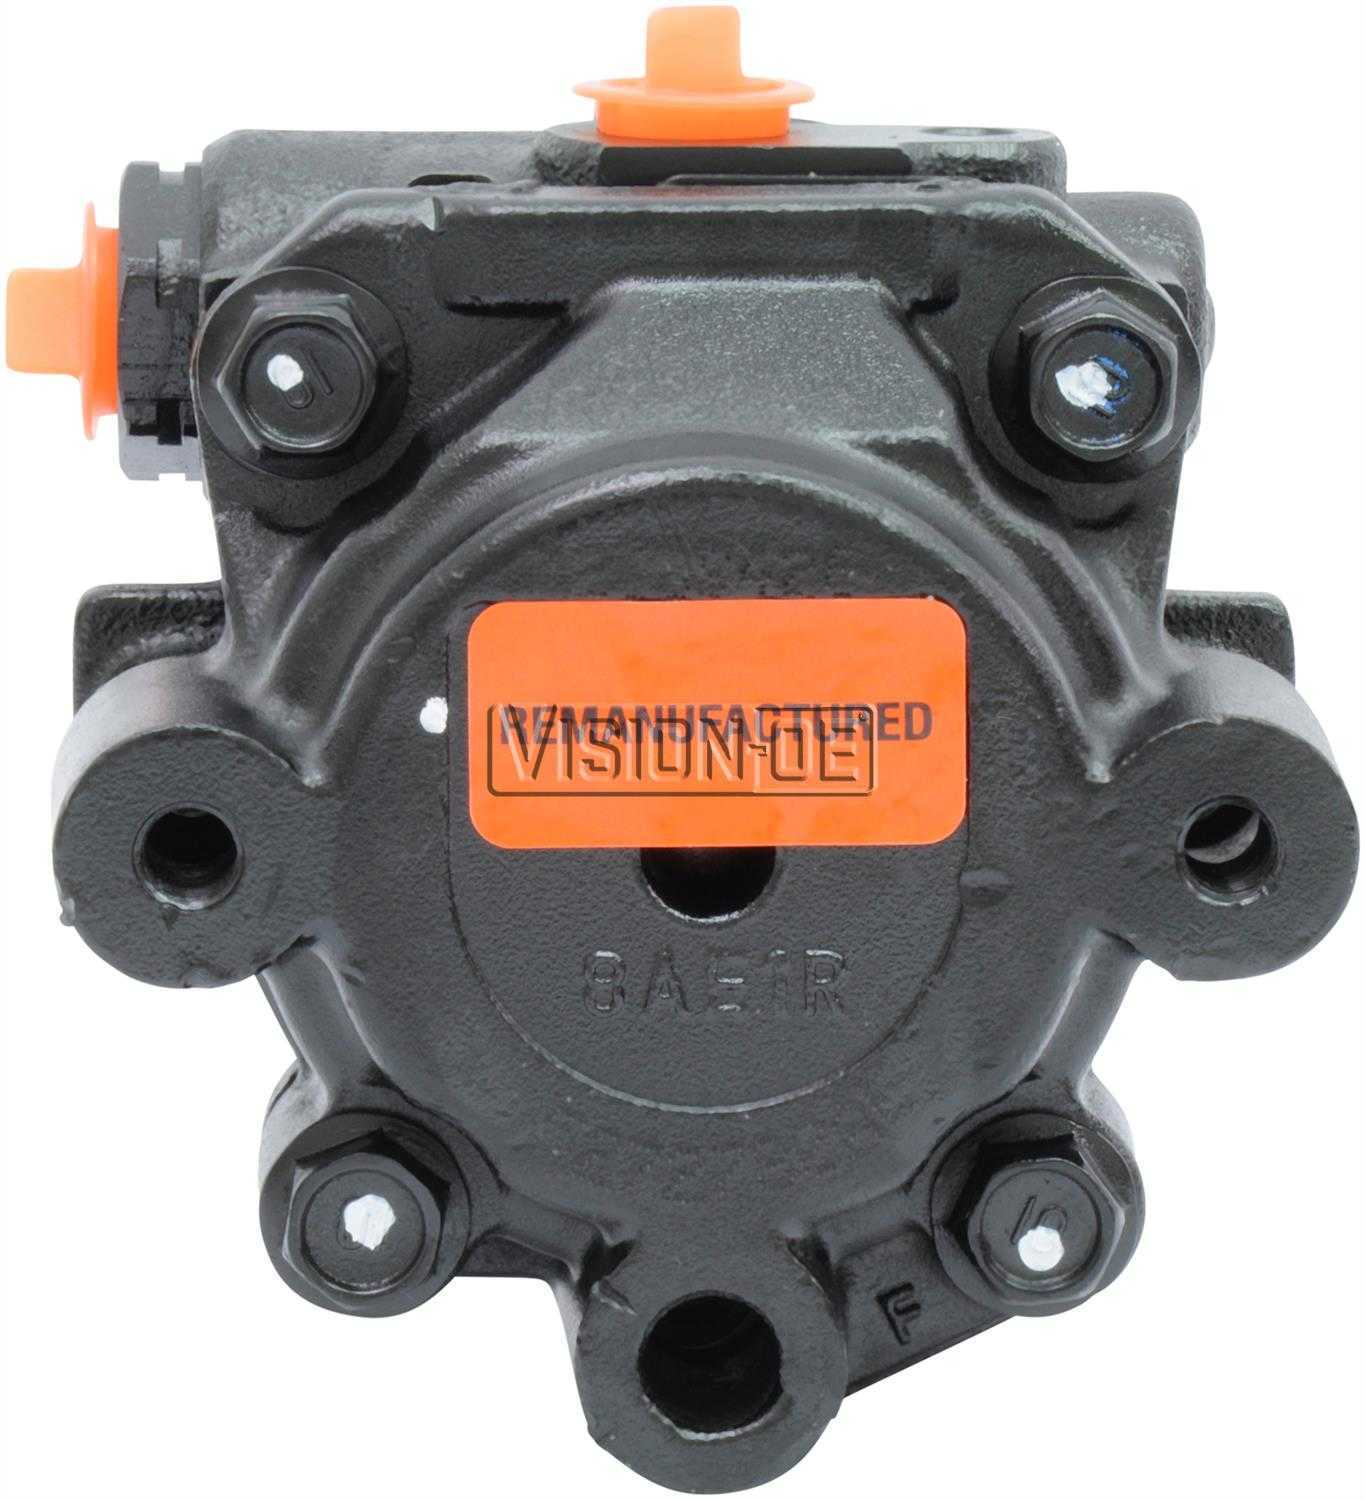 VISION-OE - Reman Power Steering Pump - VOE 920-0108